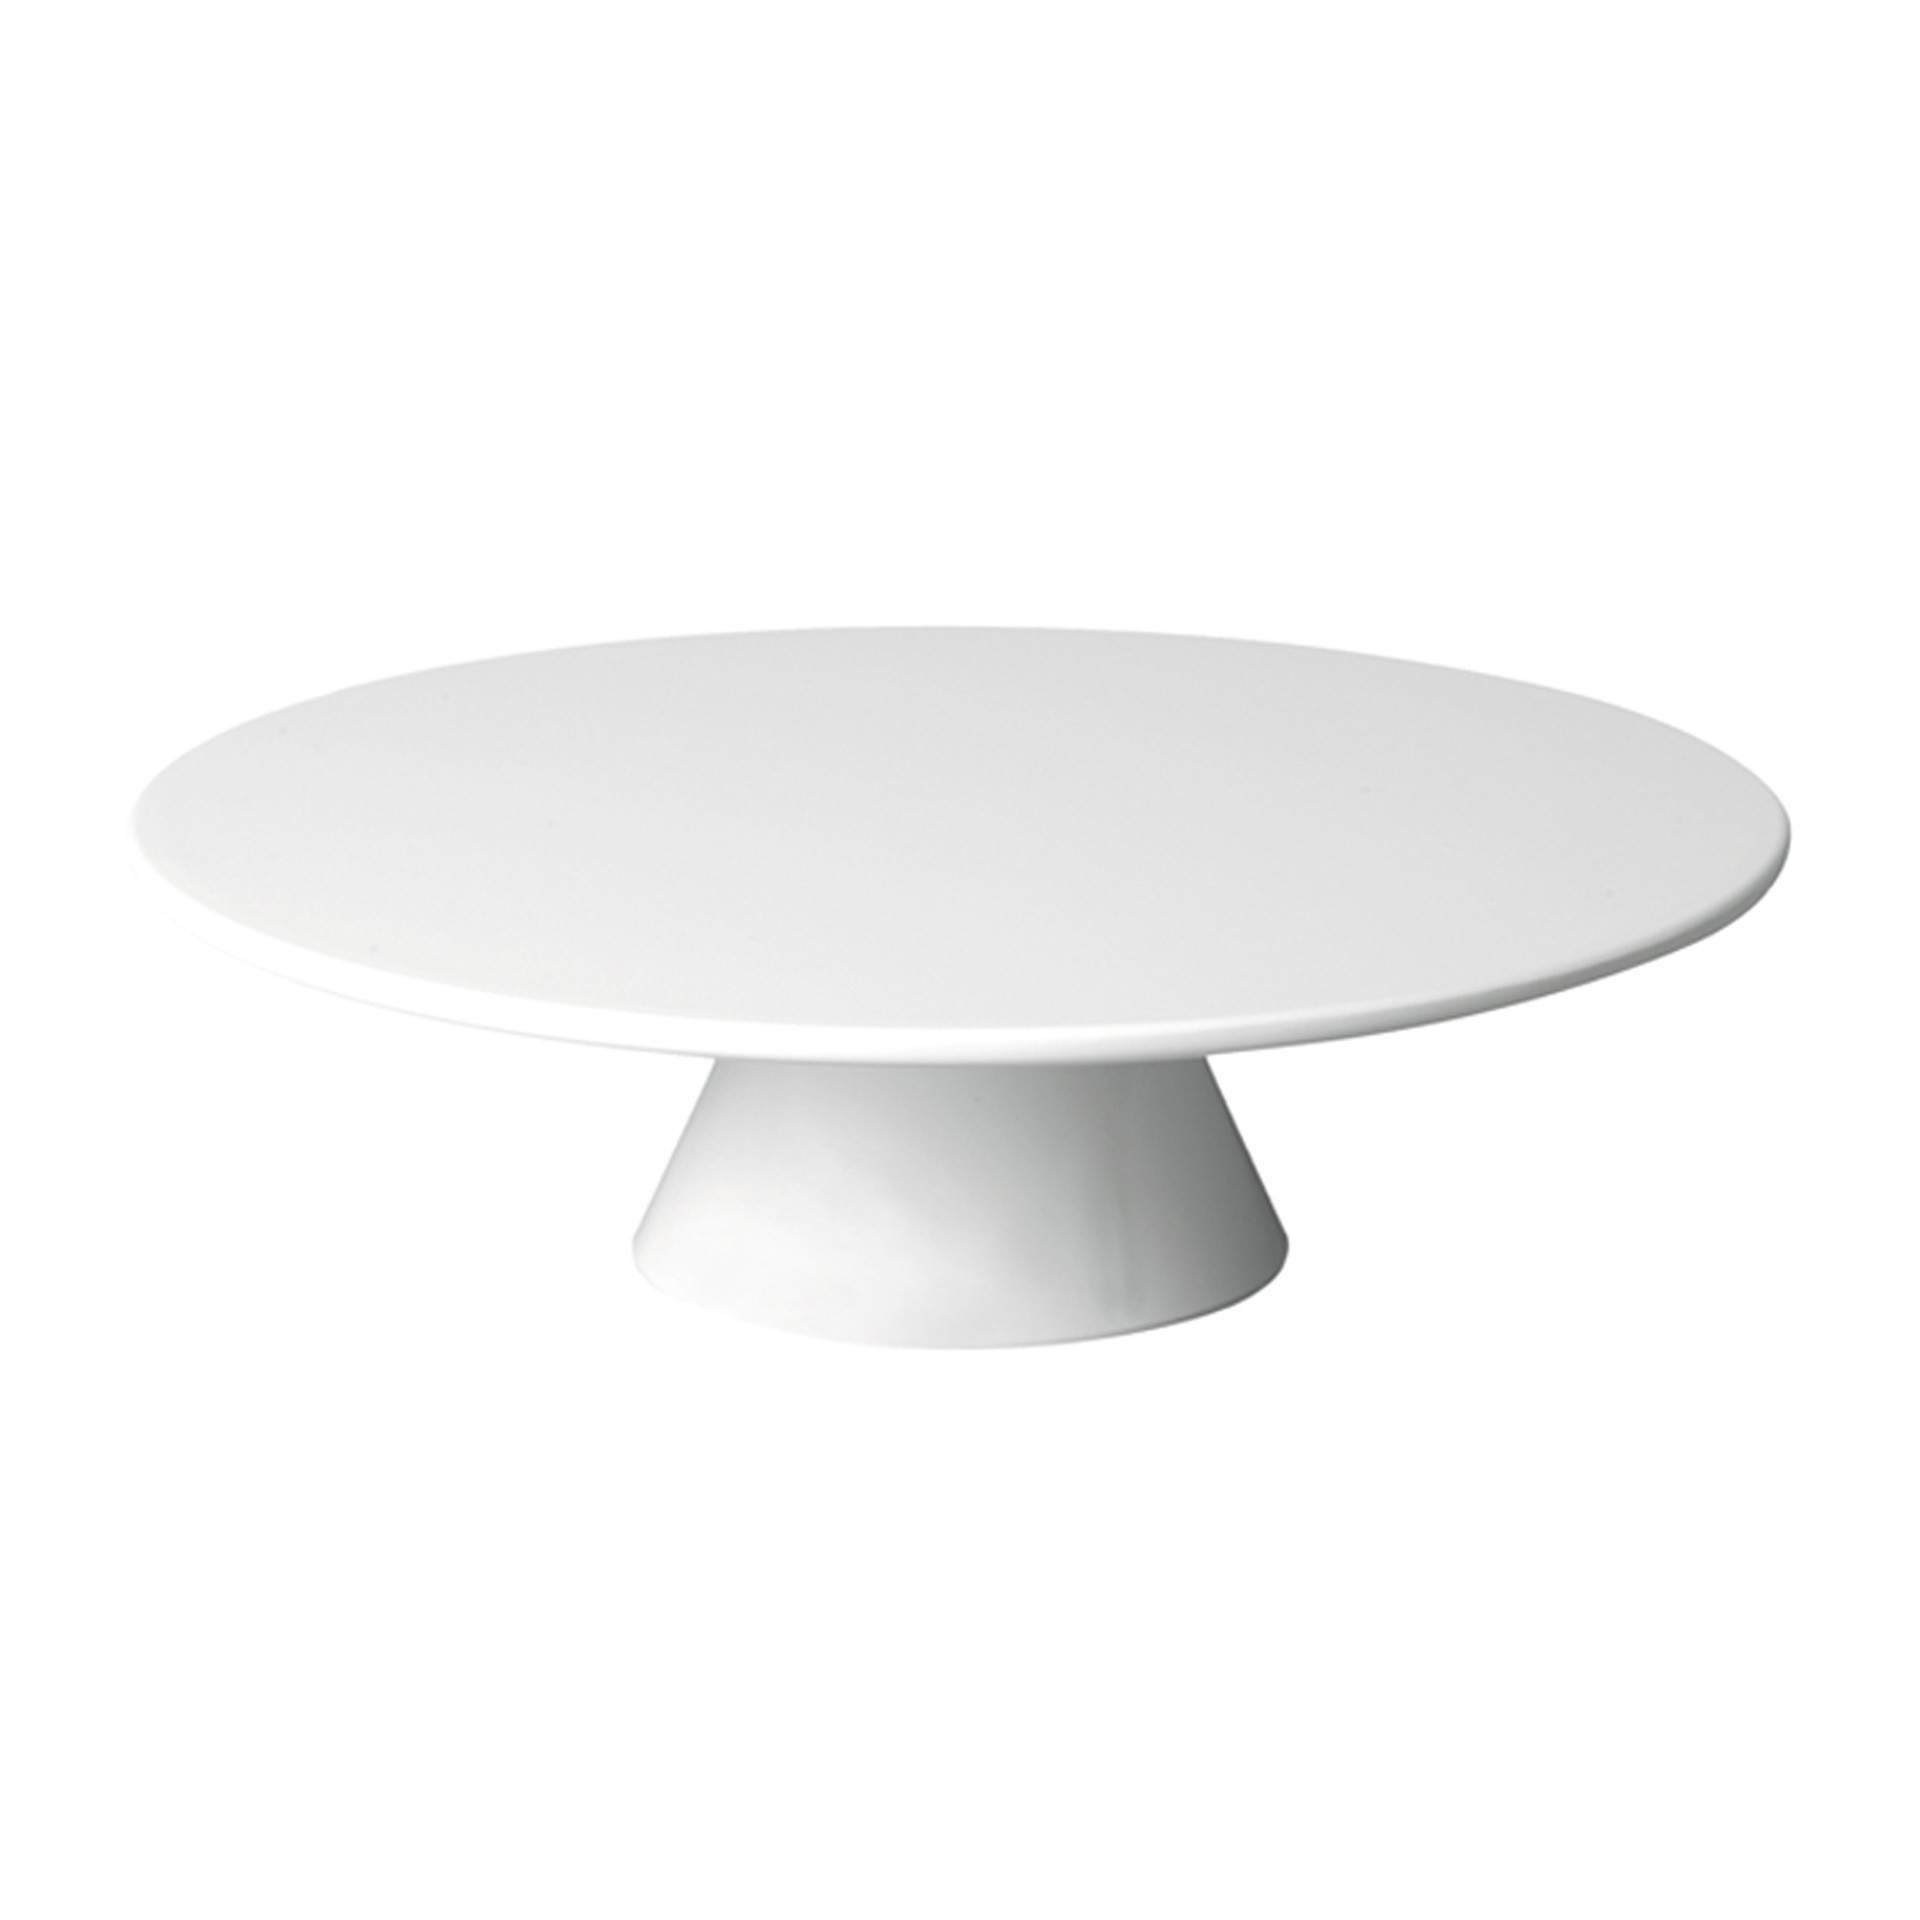 Servier- und Tortenplatte - Serie Casual - weiß - rund - Abm. 8,0 cm - Ø 31,0 cm - Melamin - 83890-B